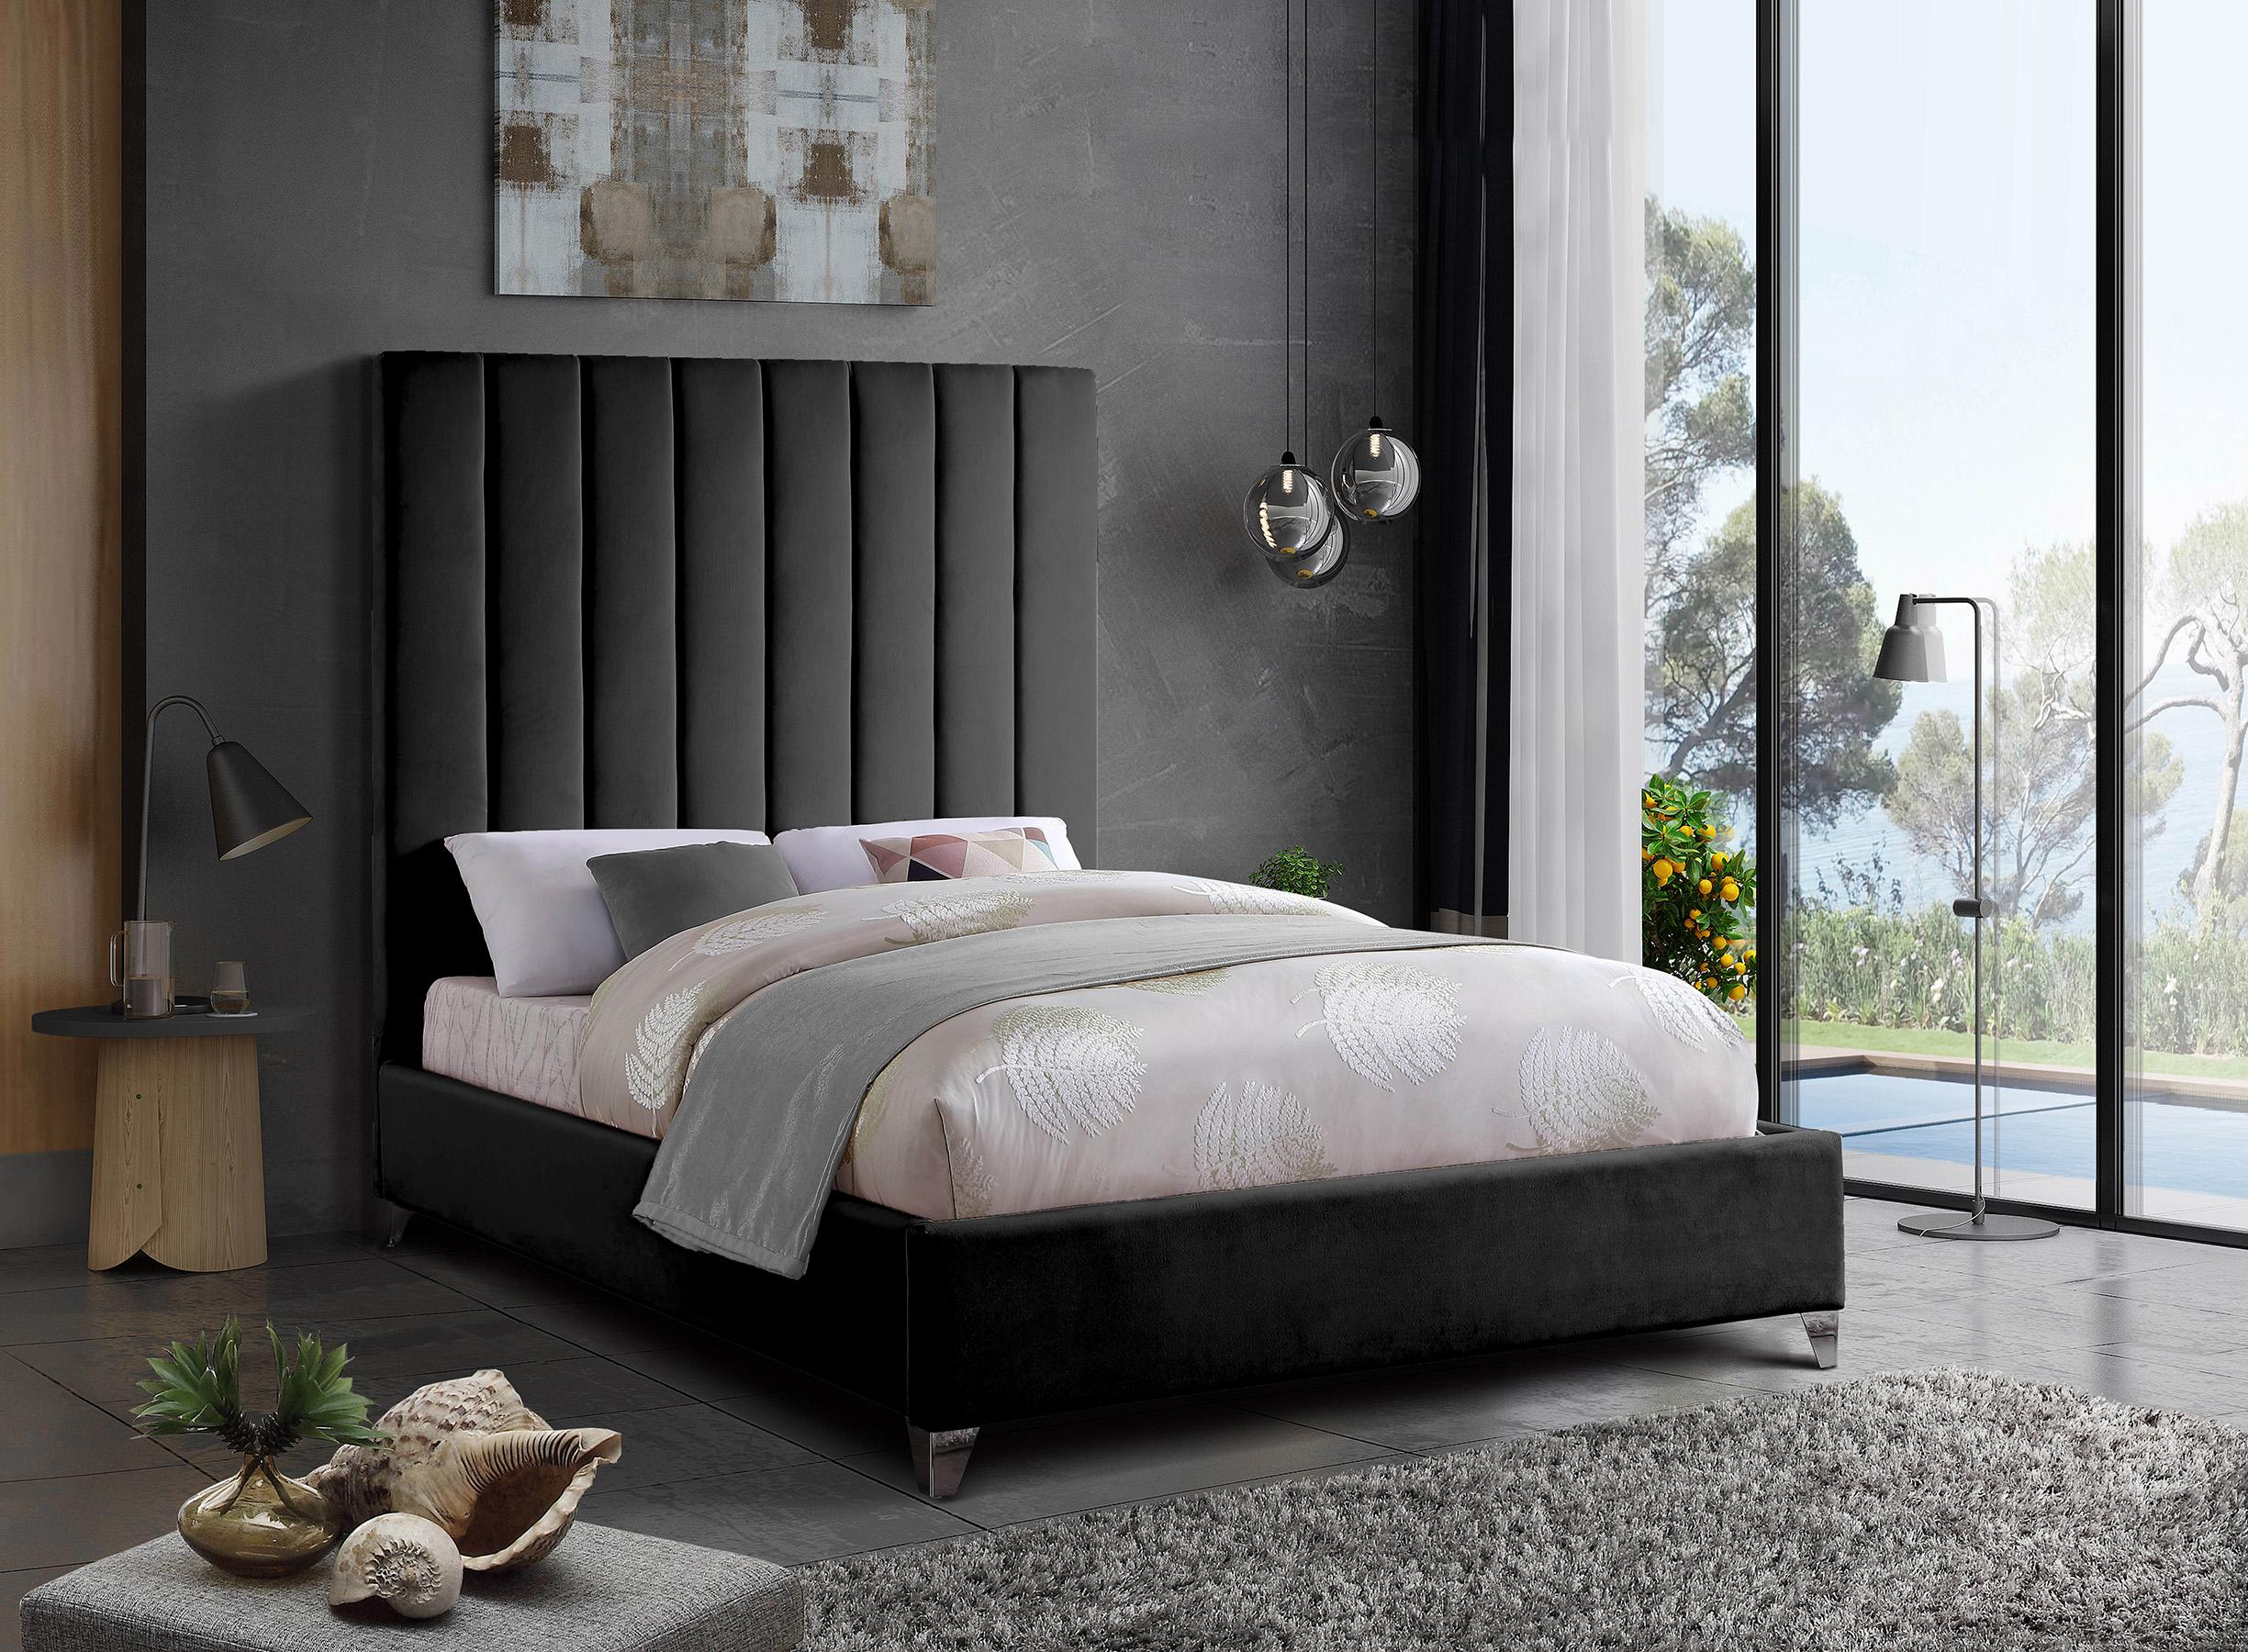 

    
ViaBlack-K Meridian Furniture Platform Bed
